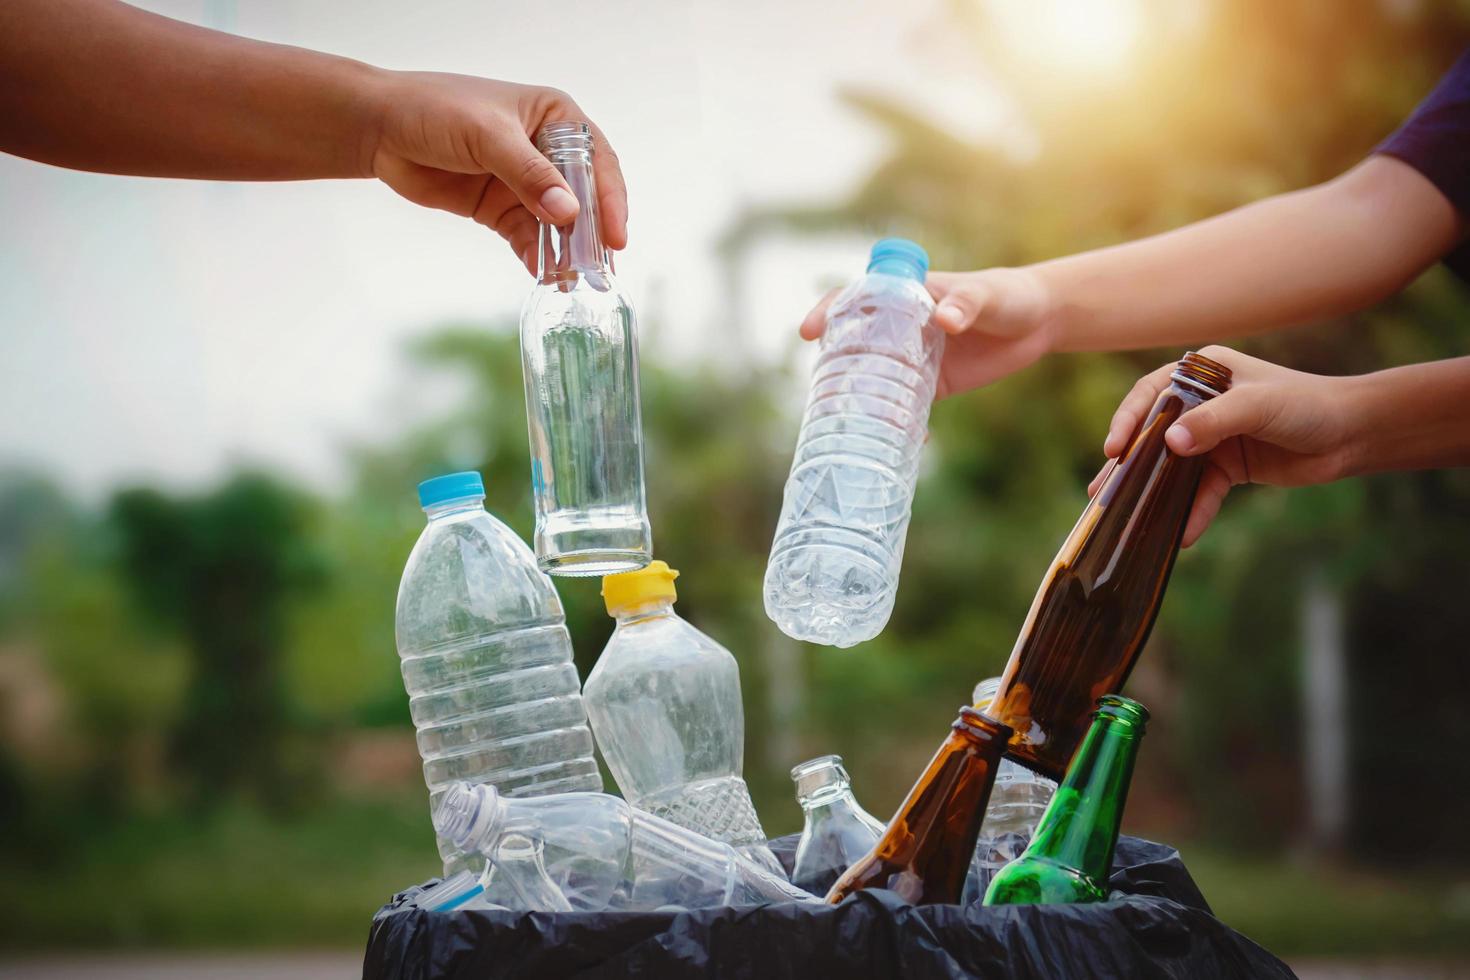 leute halten müllflasche plastik und glas in der hand und legen sie zur reinigung in den recyclingbeutel foto